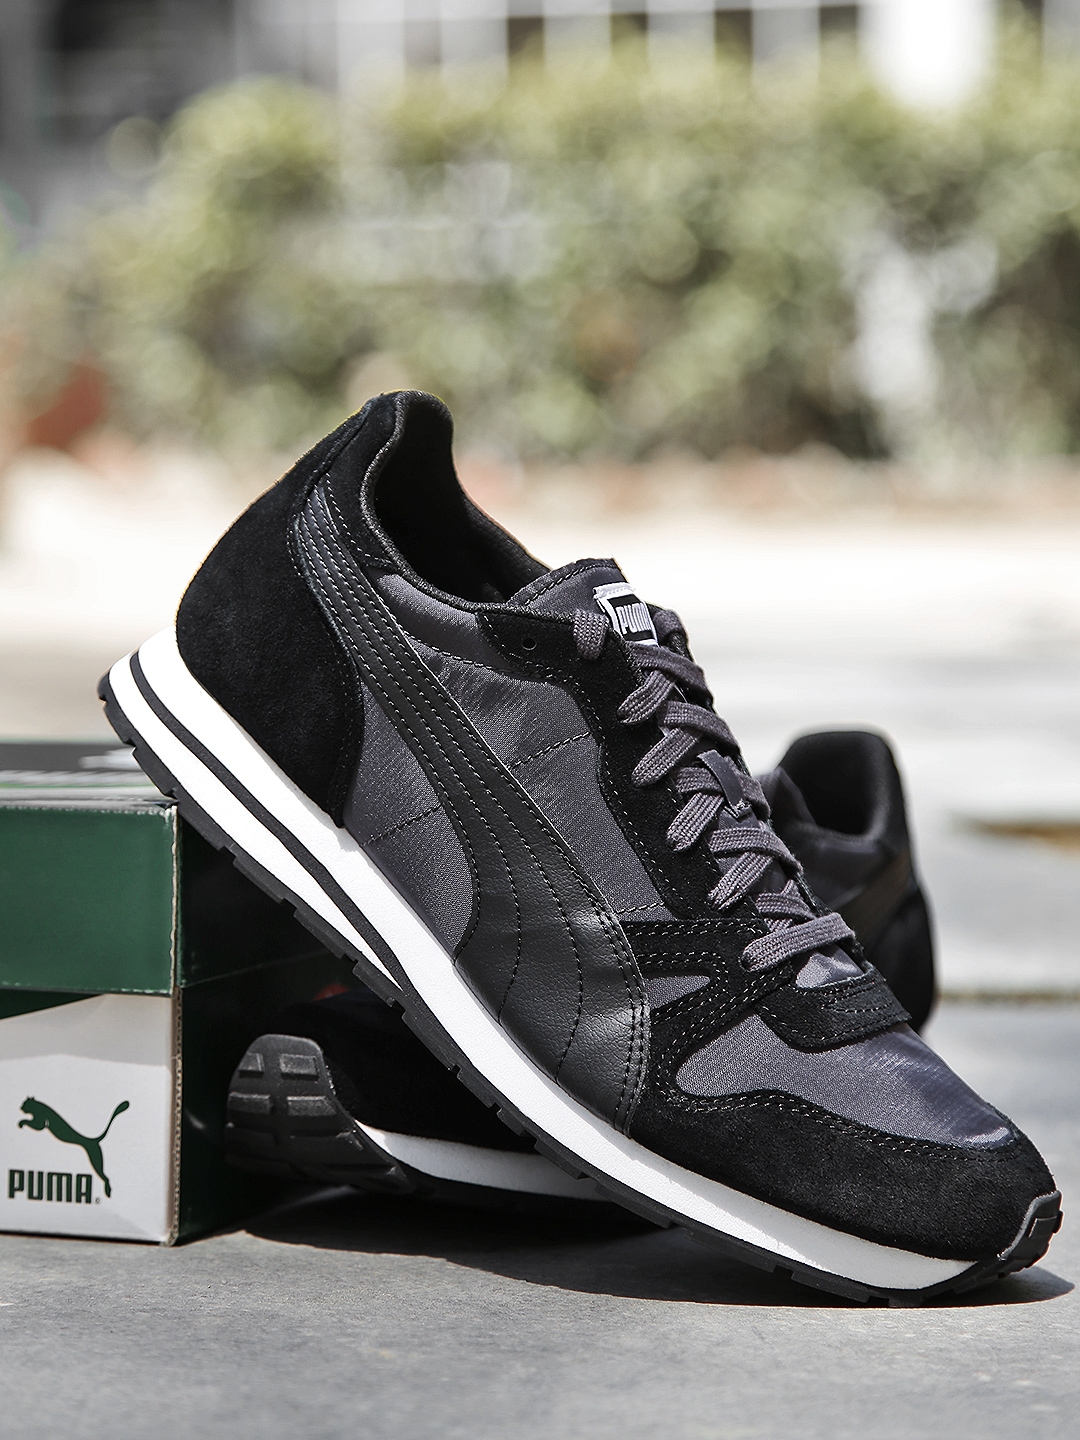 puma yarra classic sneaker